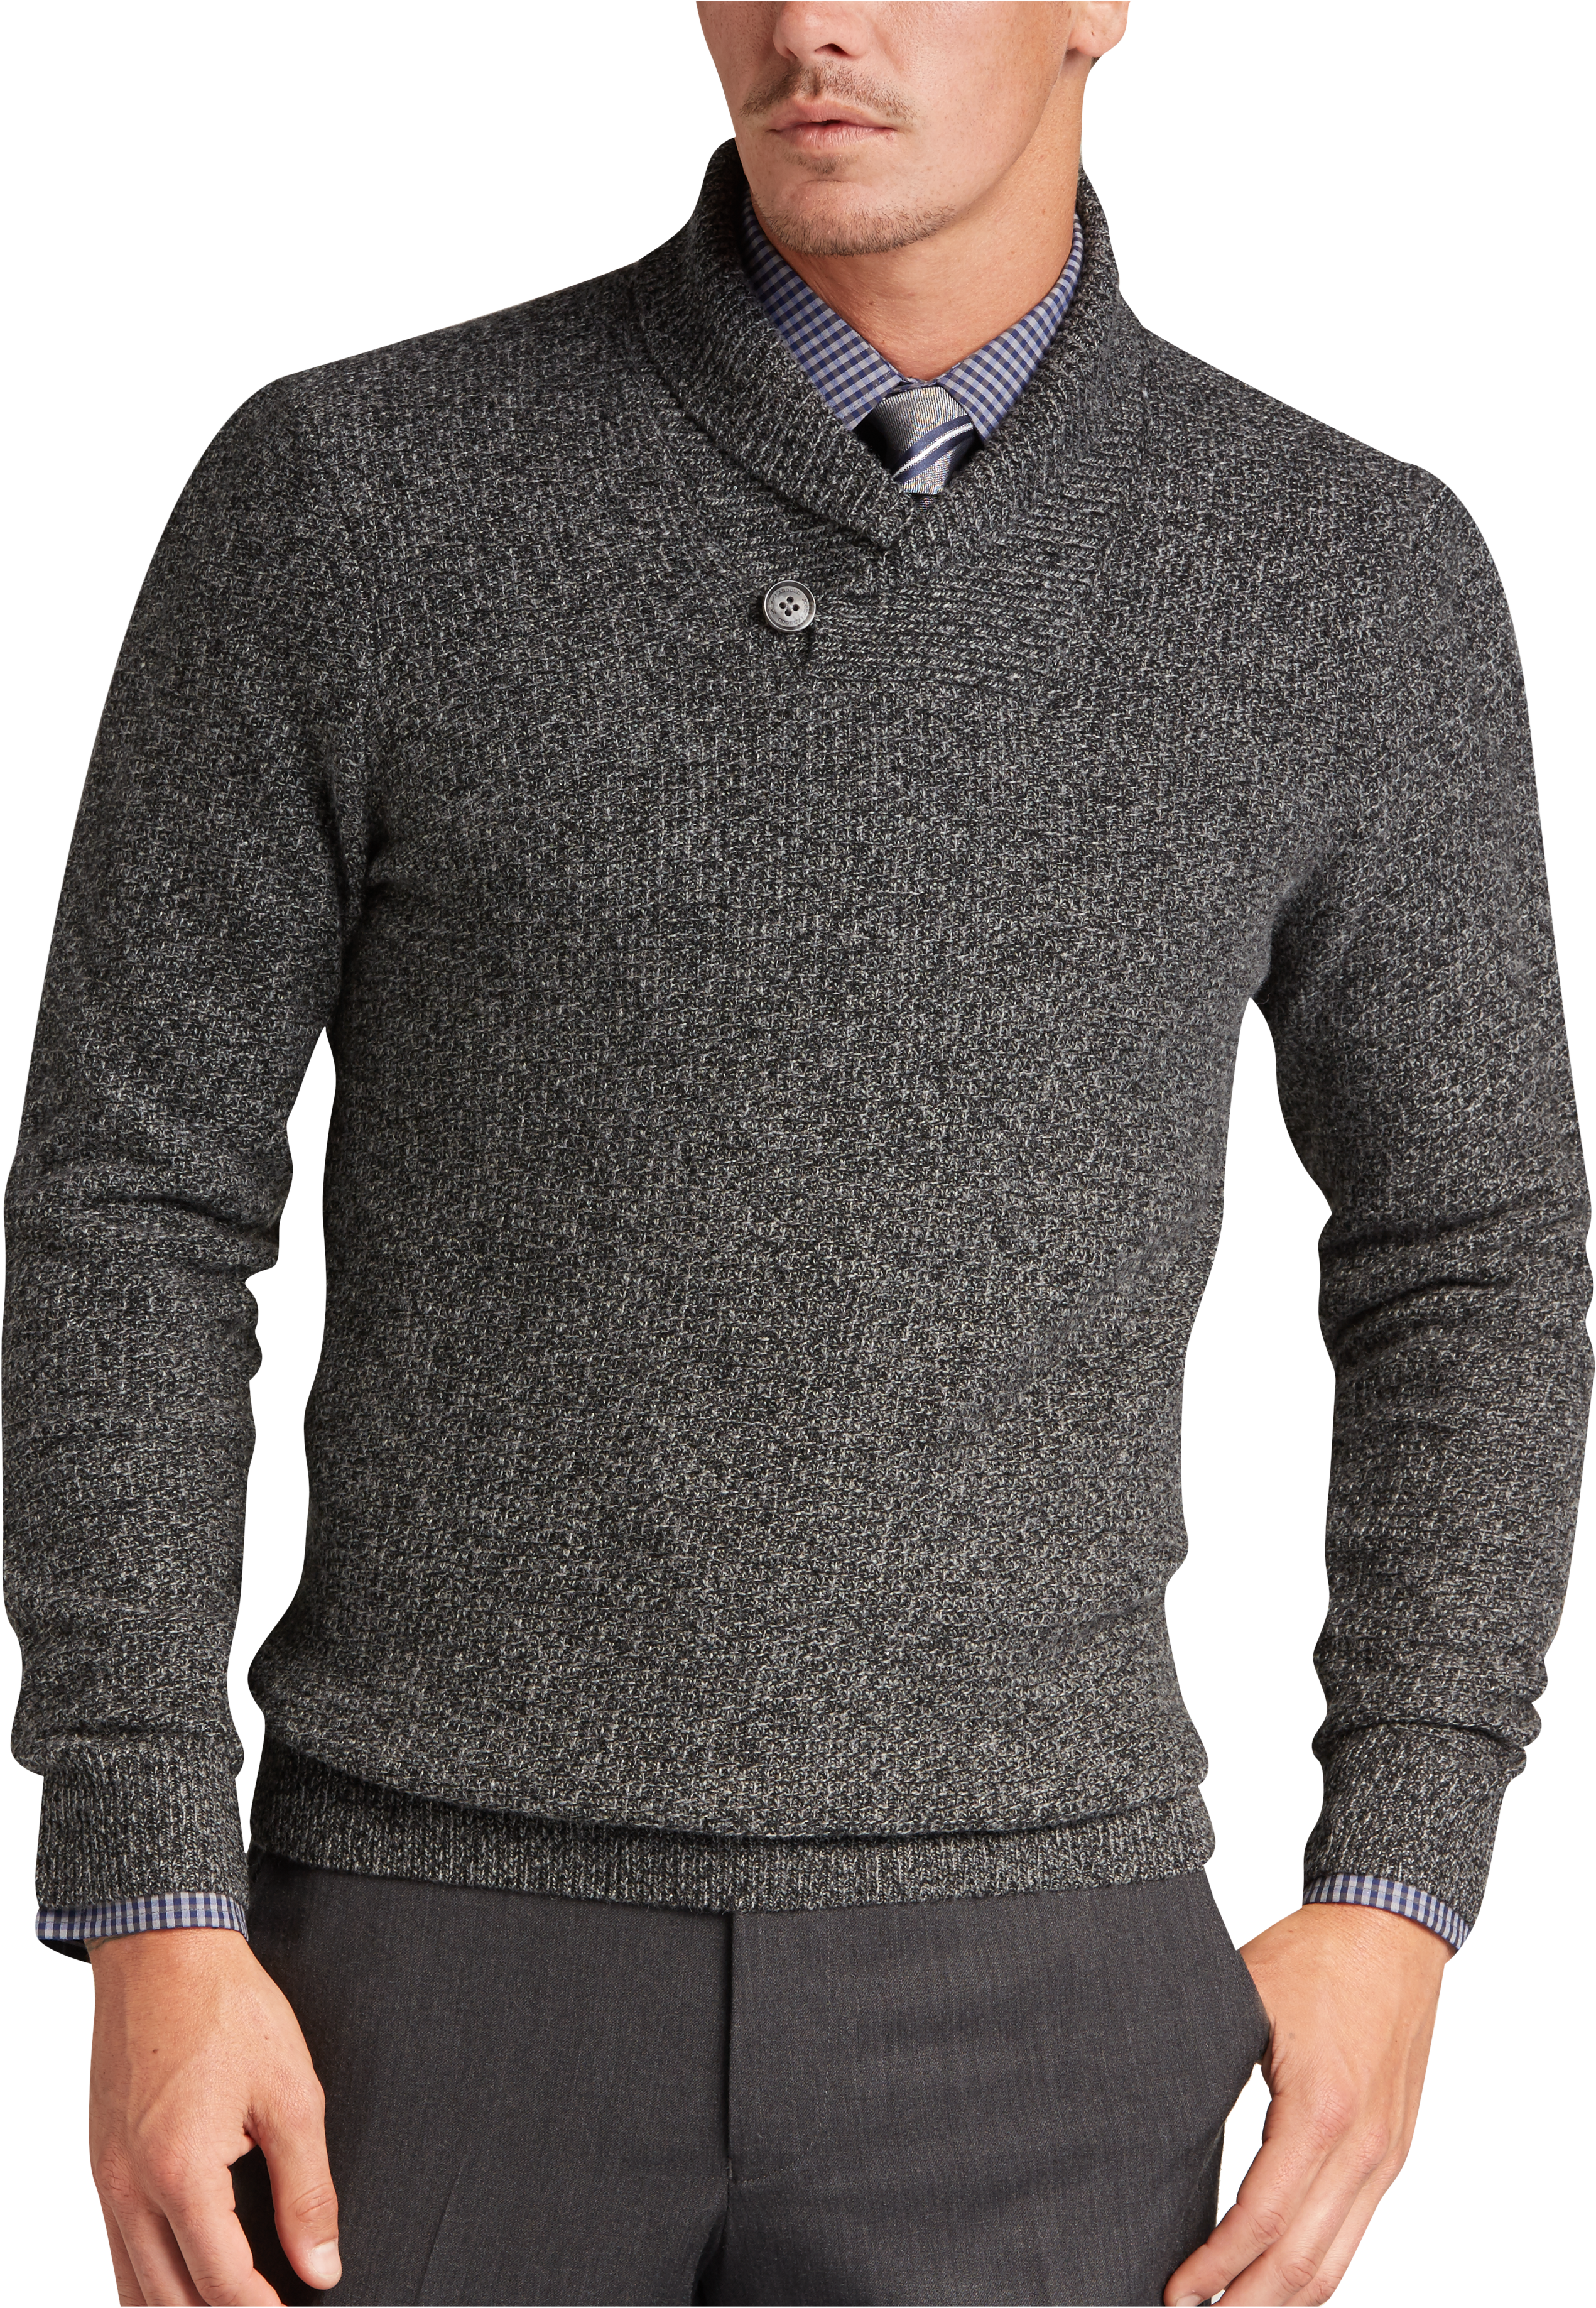 Black Wool Sweater | Mens Wearhouse